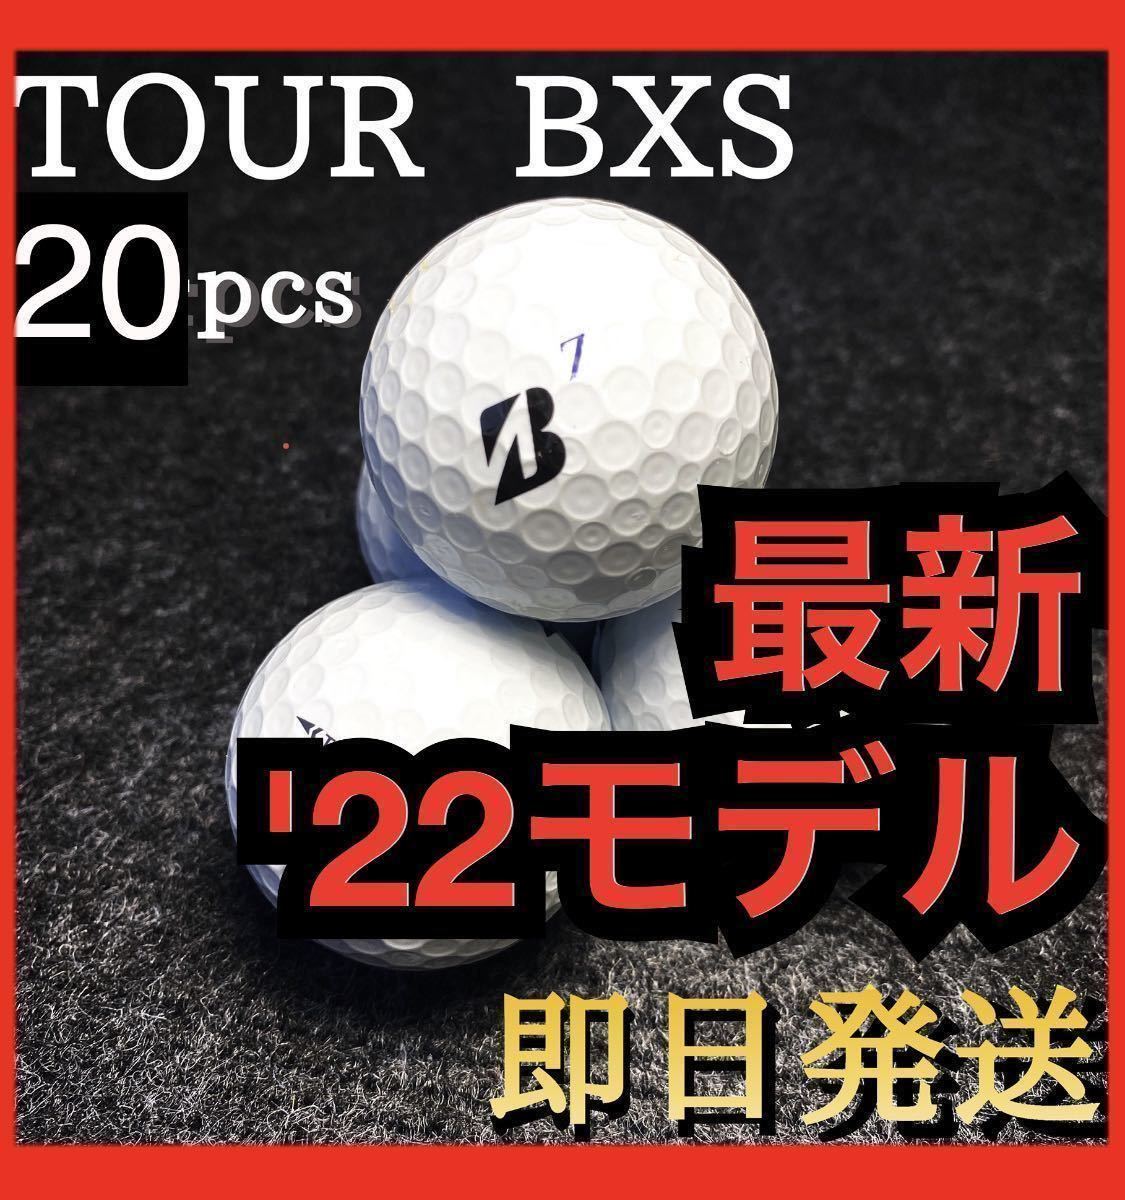 ★特価セール★現行最新'22モデル★ブリヂストン ツアーBXS TOUR BXS 20球 ゴルフボール_画像1